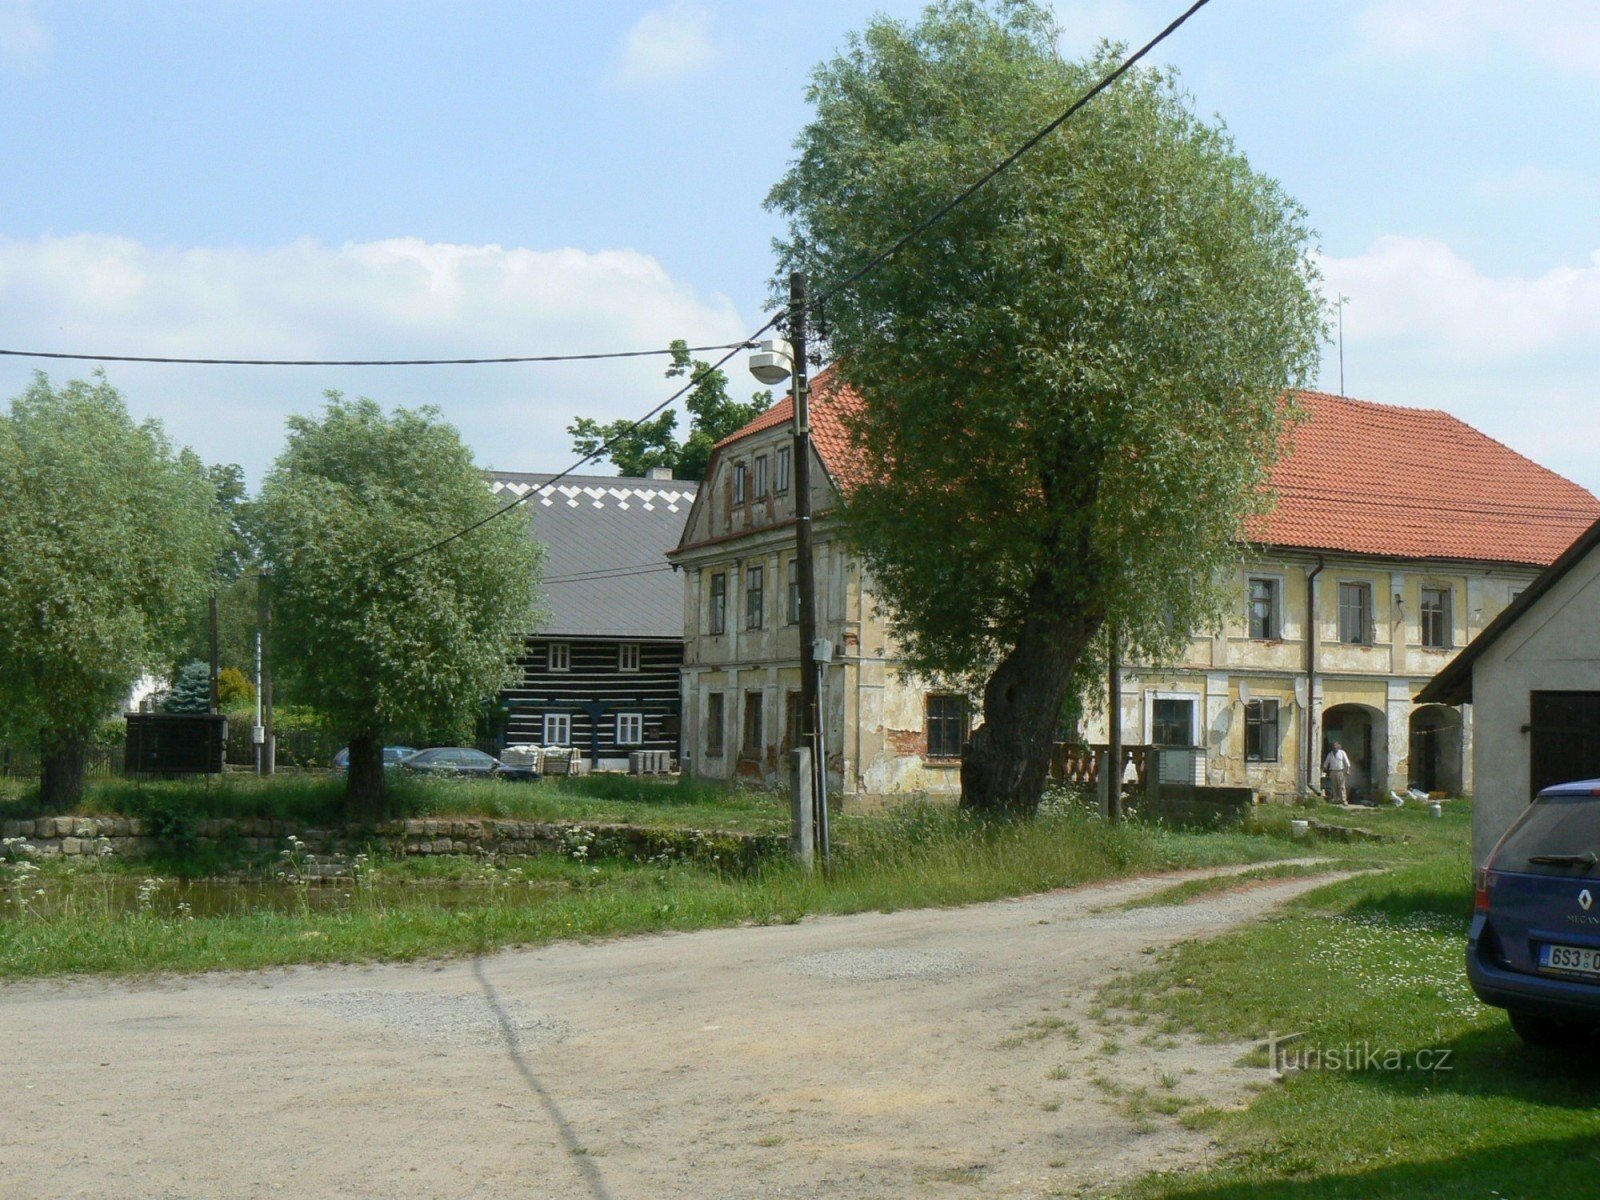 Σπίτια στο χωριό